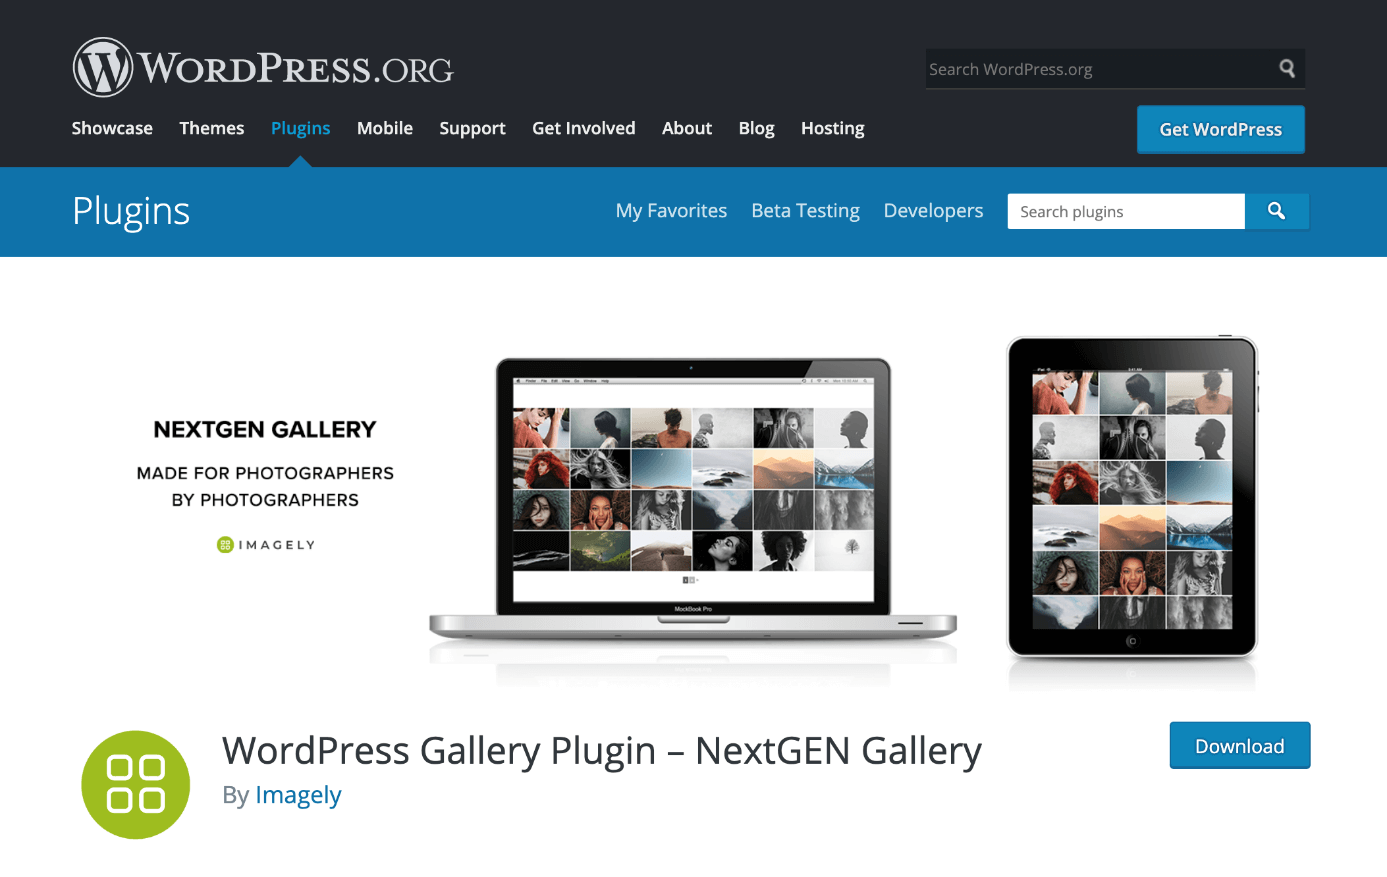 NextGEN Gallery se puede descargar desde WordPress.org